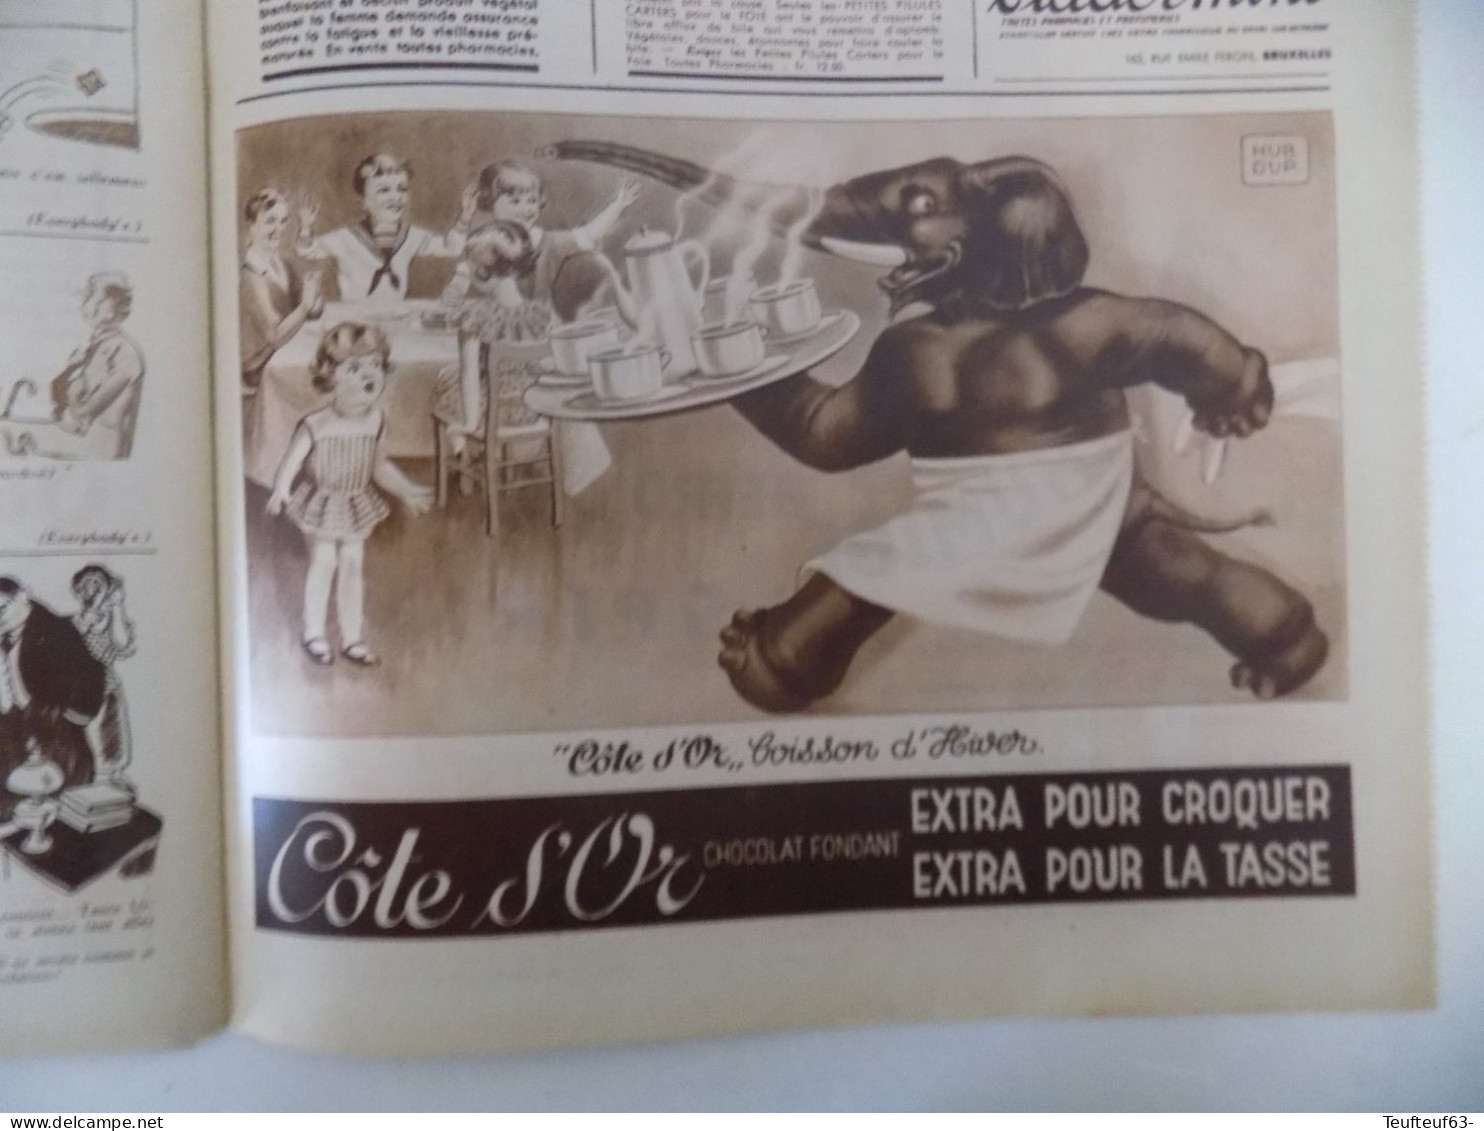 Le Patriote illustré n° 2/1936 religieuses “ Bon Pasteur ” - sultan IBN-Seoud Mer Rouge - belle pub chocolat Côte d'or..